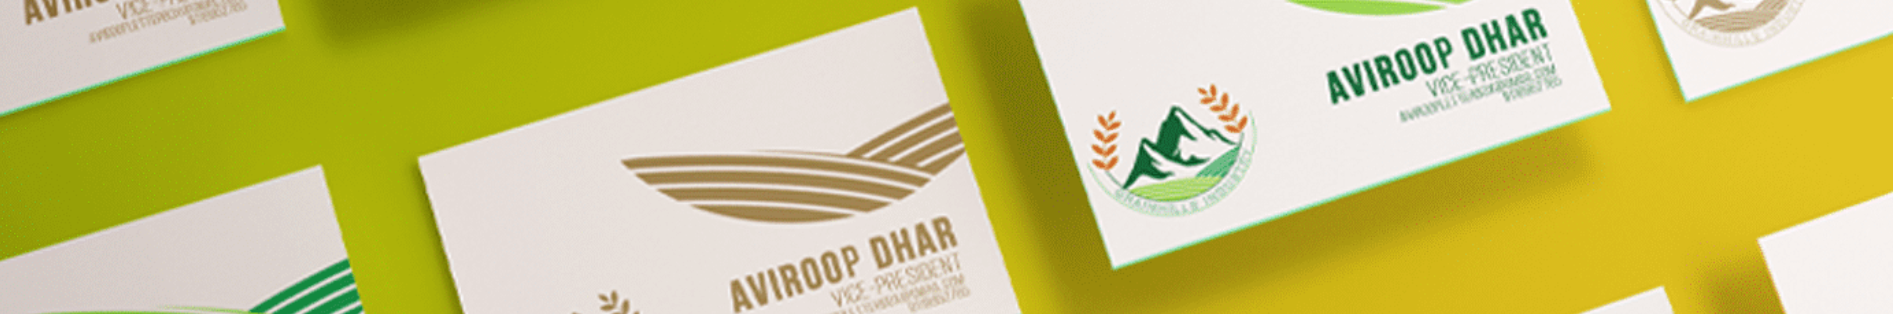 Aviroop Dhar's profile banner